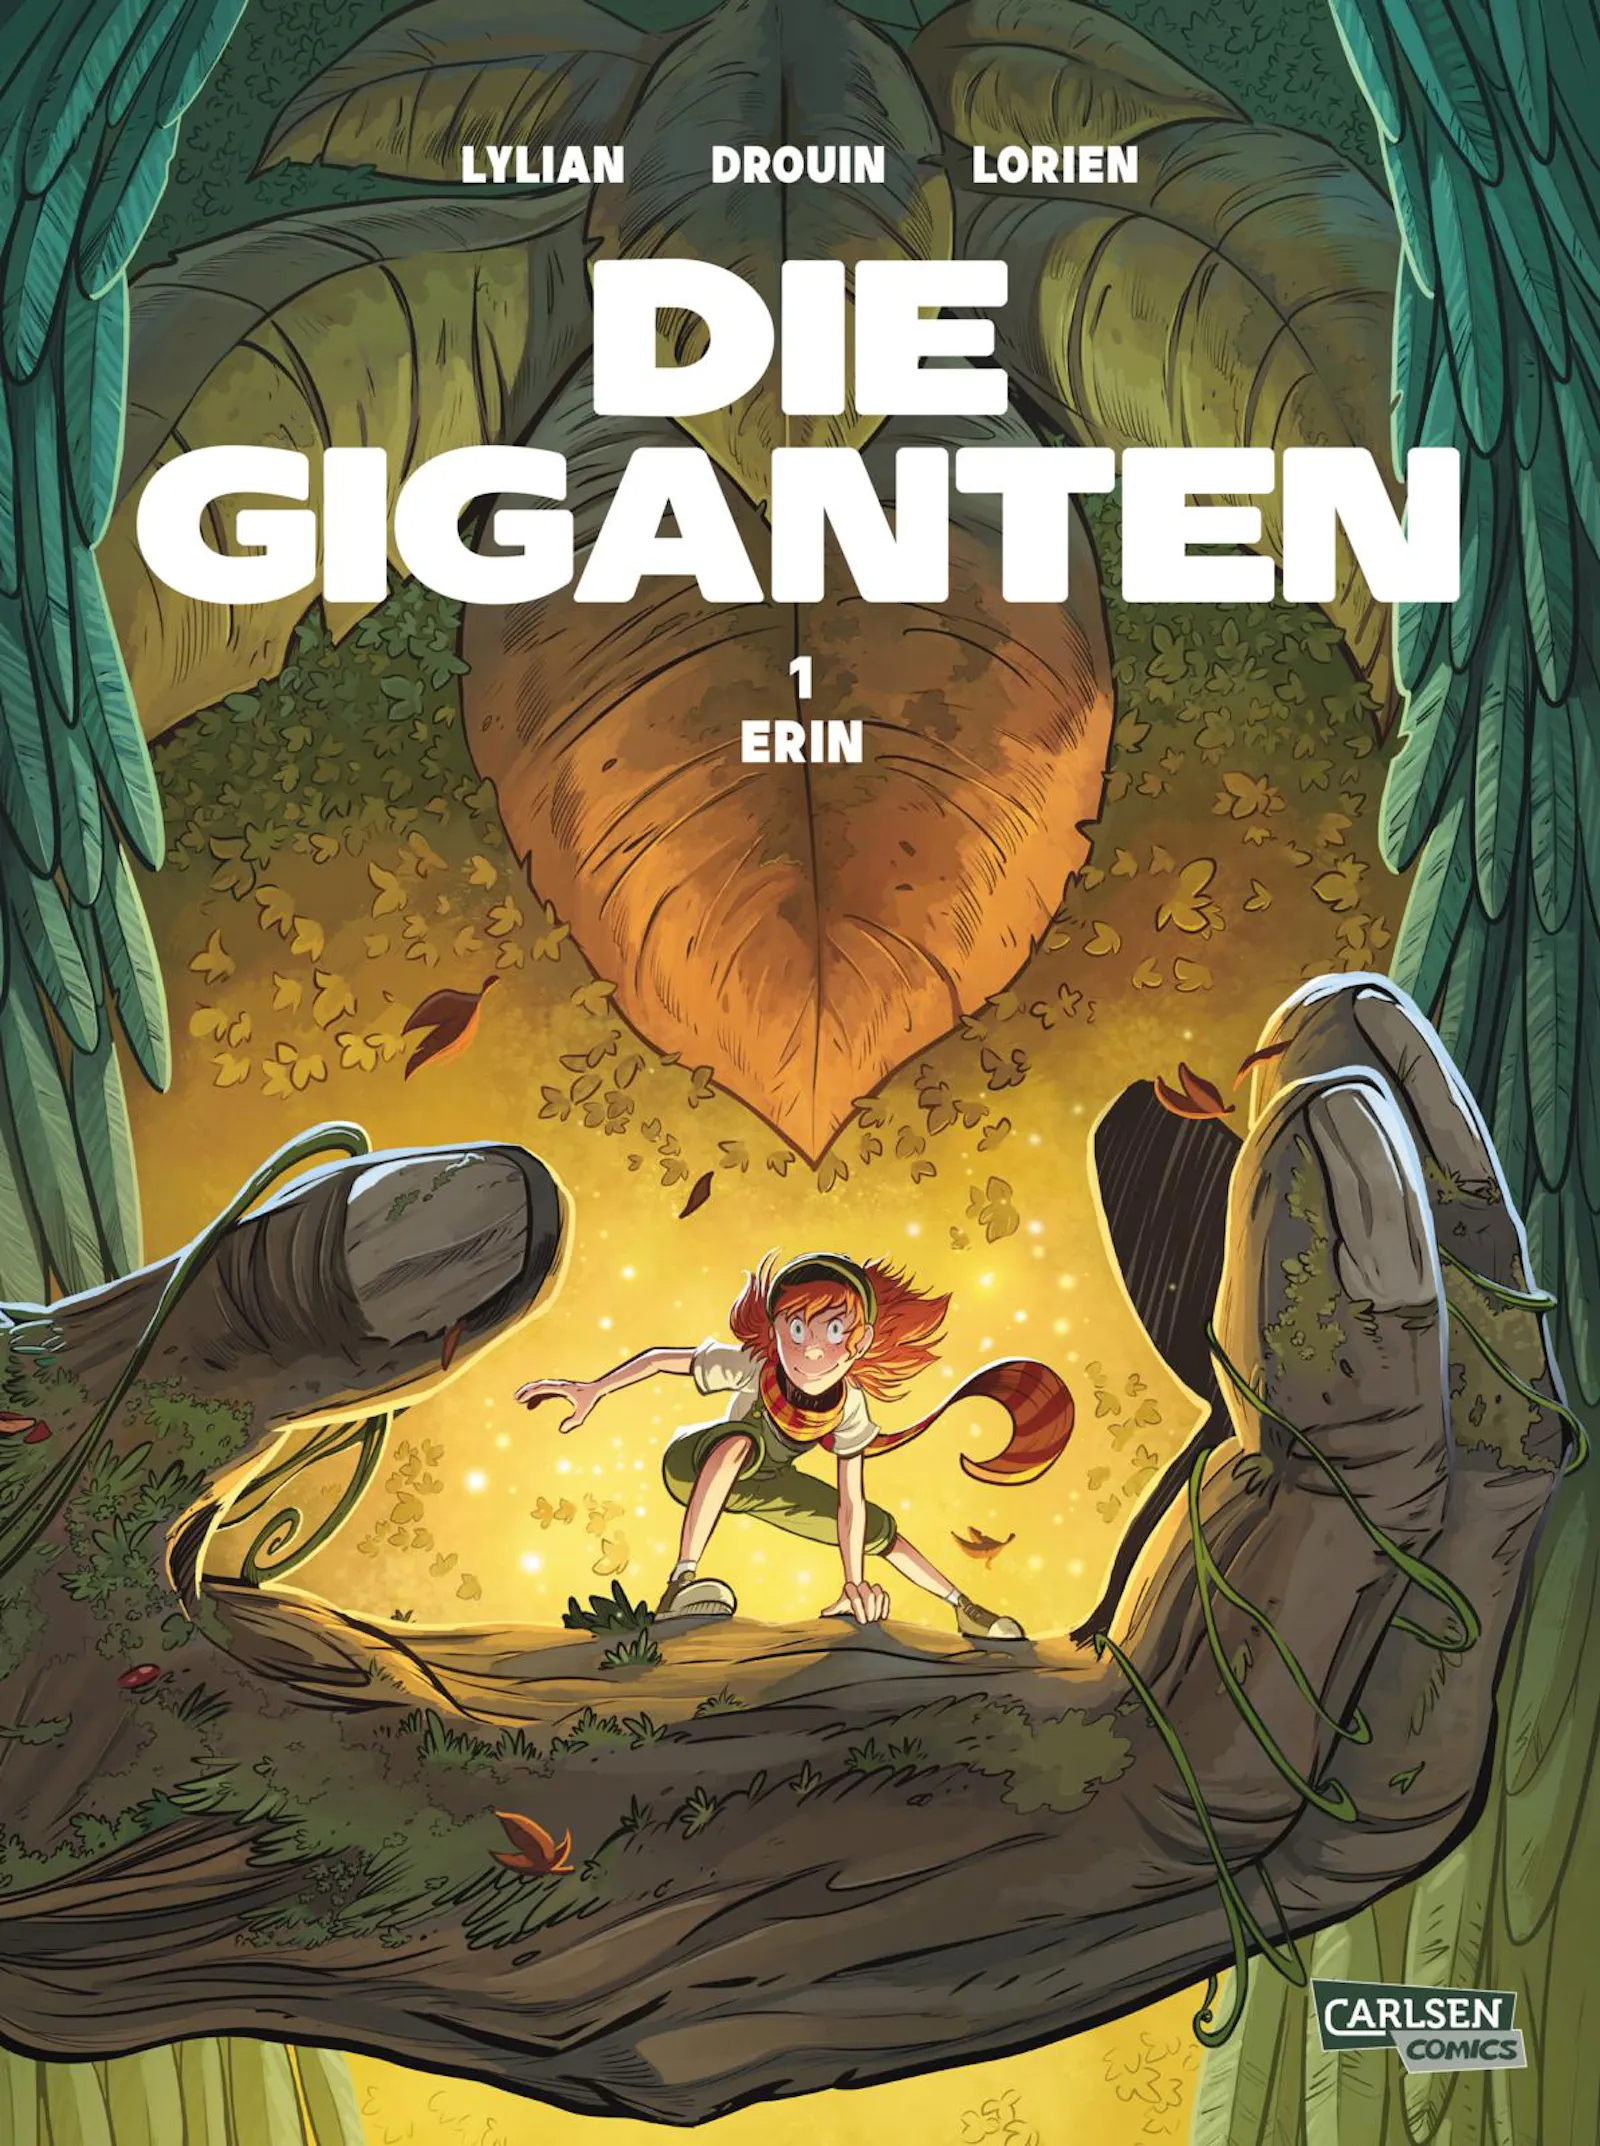 Cover des Comics "Die Giganten - Erin" von Lylian, Drouin und Lorien aus dem Carlsen Verlag